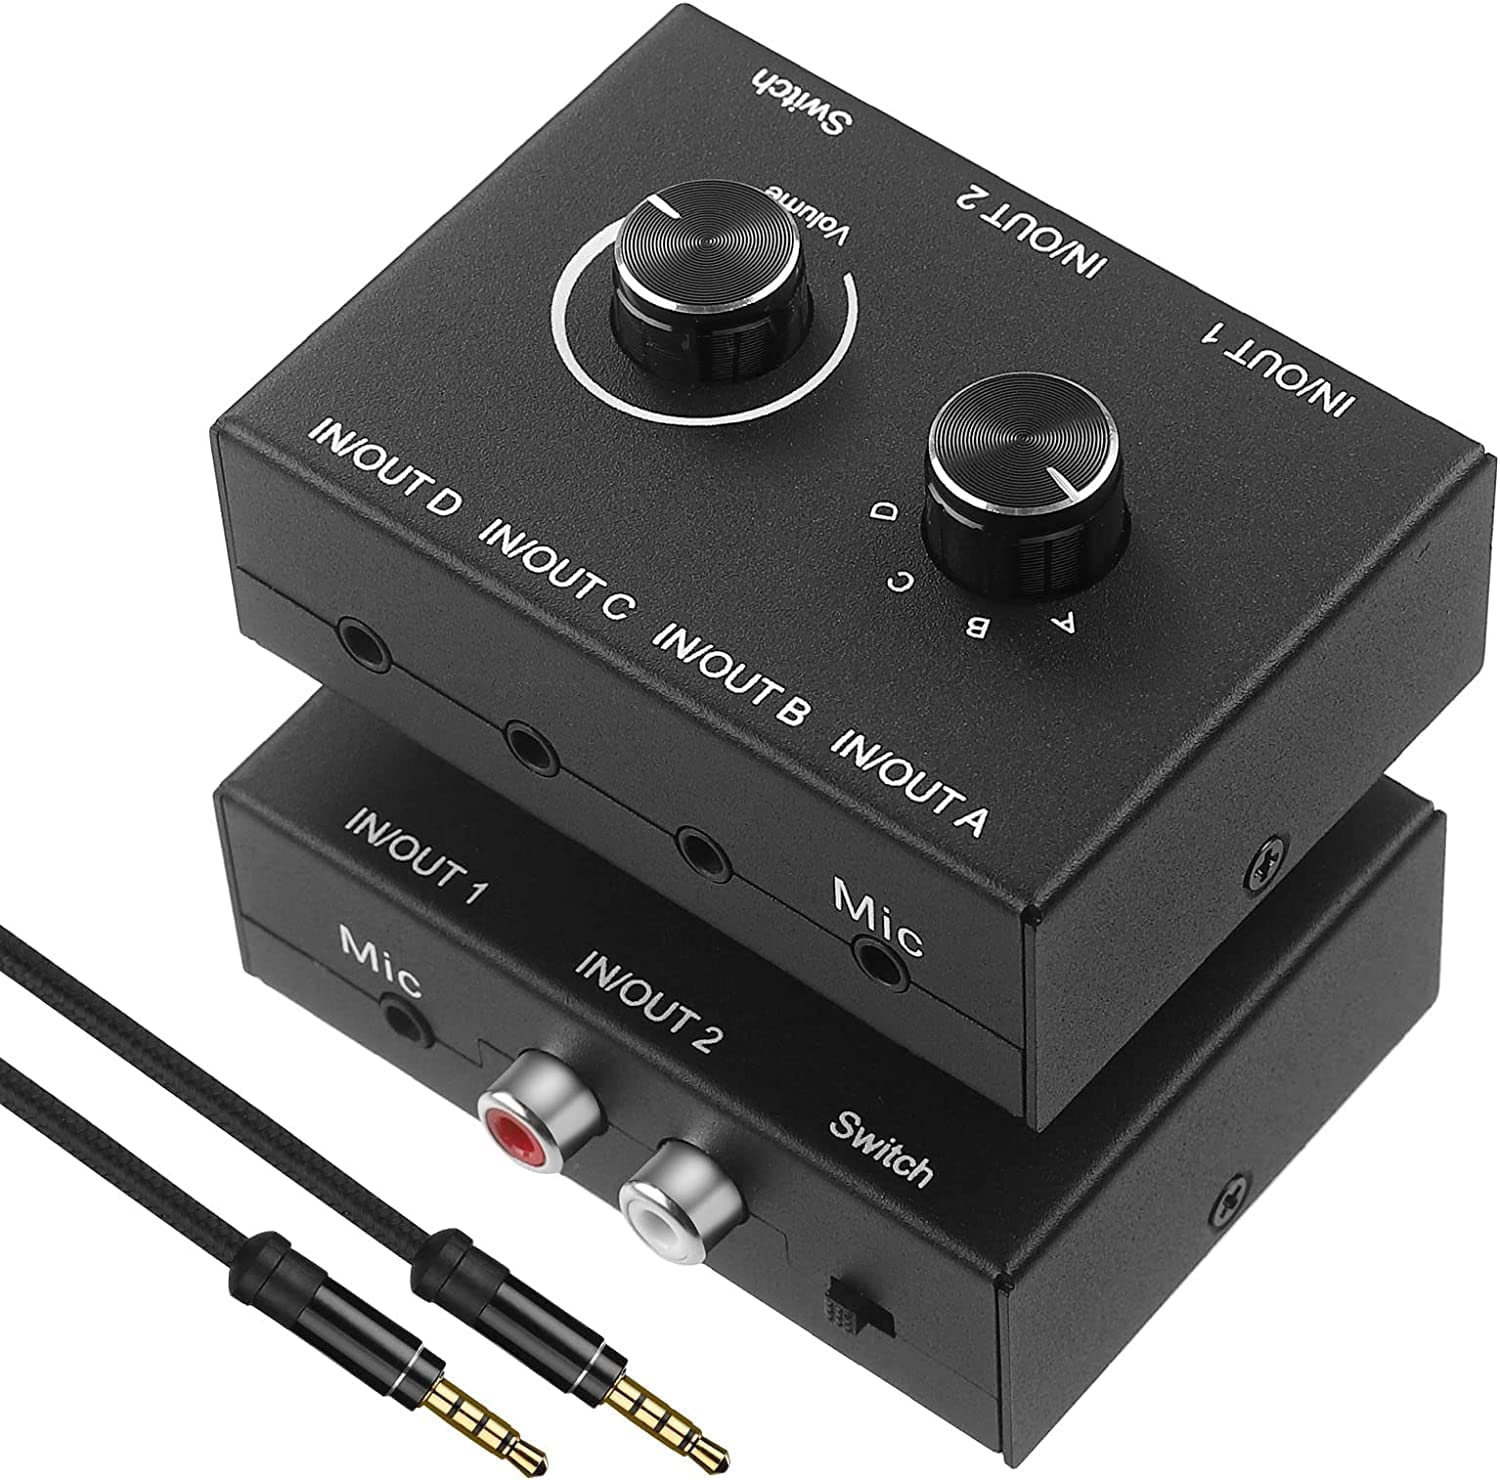  аудио селектор 4 ввод 2 мощность /4 мощность 2 ввод переключатель ES-Tune интерактивный RCA стерео звук переключатель .- сплиттер источник питания не необходимо 3.5mm аудио кабель есть 